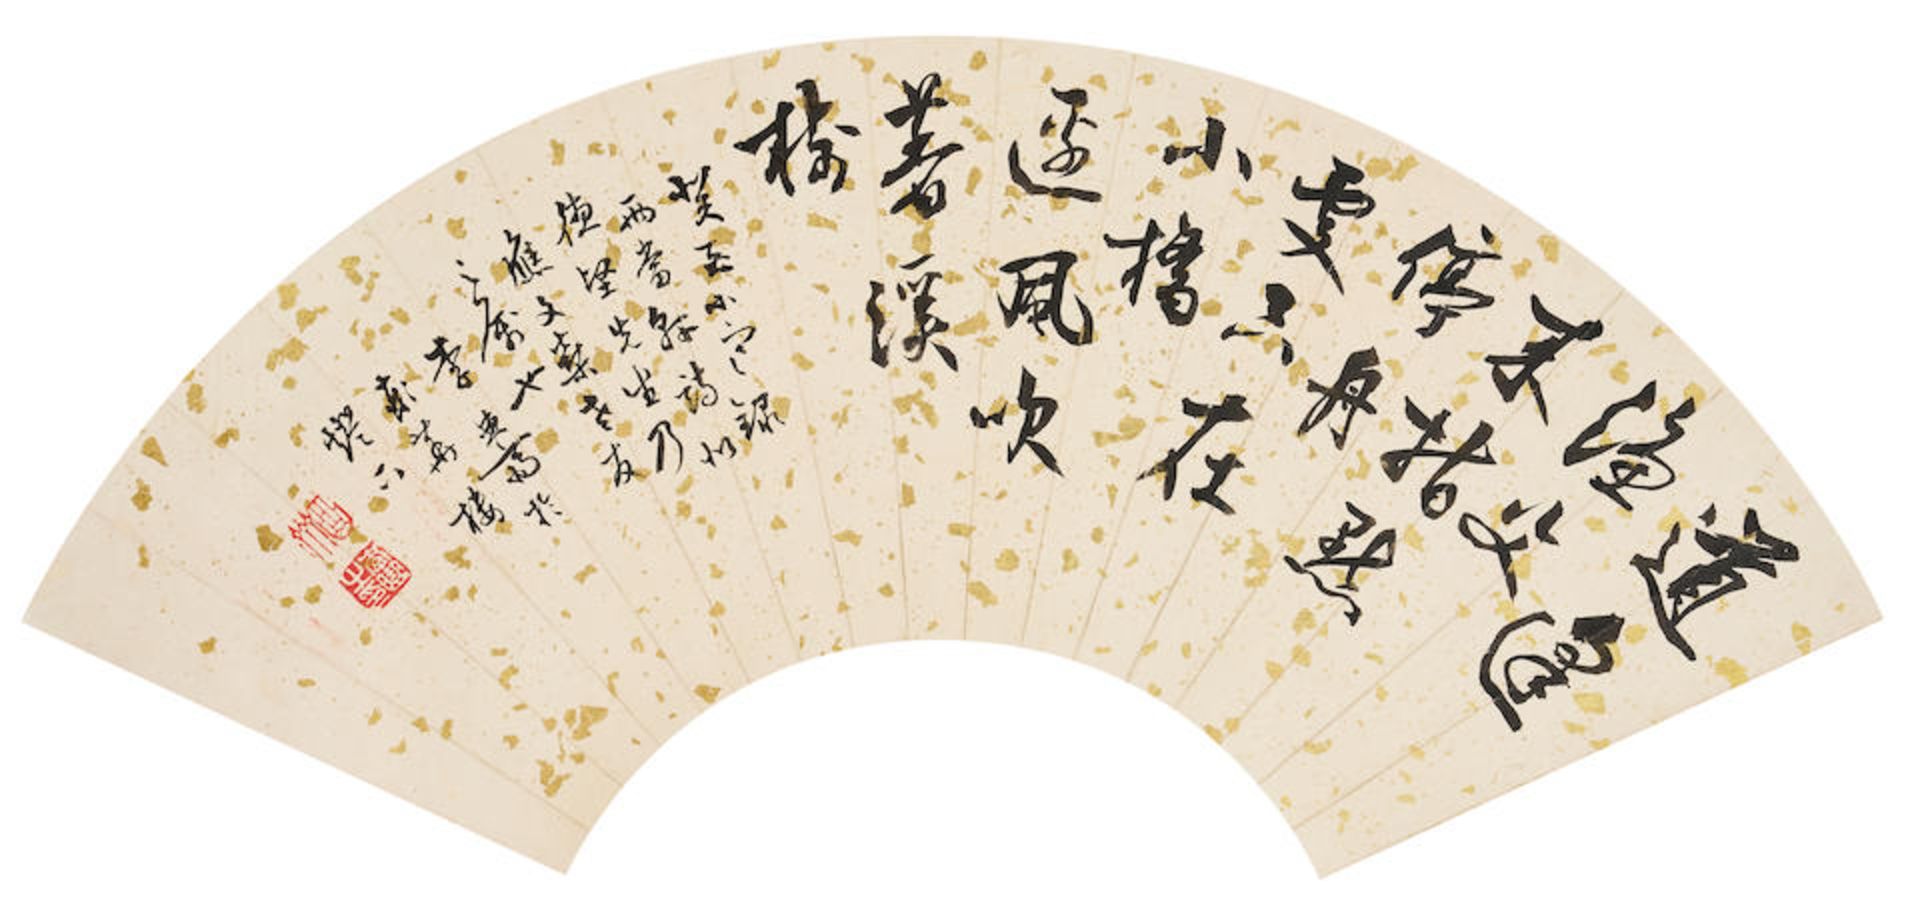 Li Quzhai (1916-1996) Calligraphy